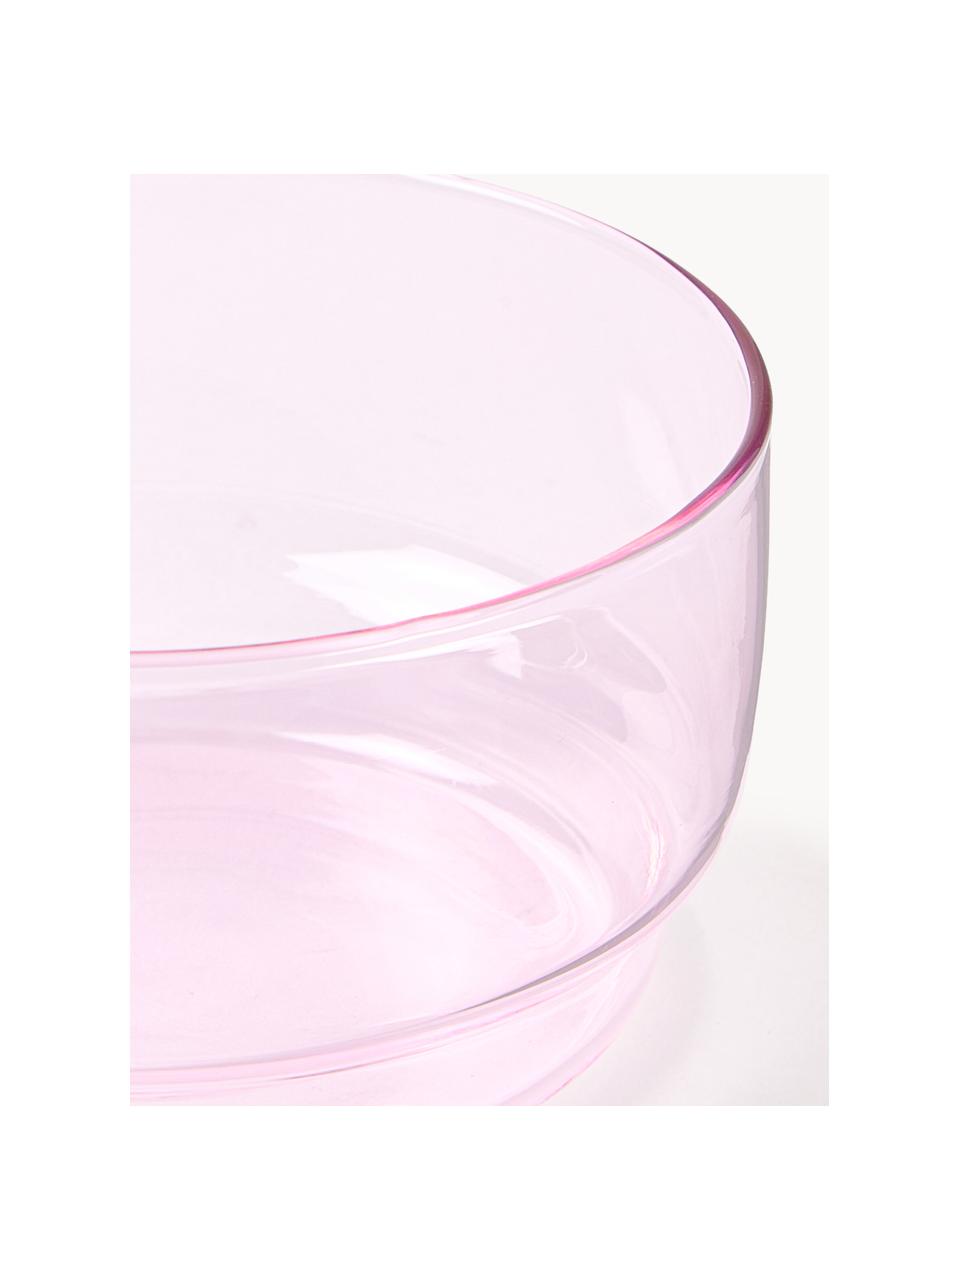 Ciotole in vetro borosilicato Torino 2 pz, Vetro borosilicato

Scopri la versatilità del vetro borosilicato per la tua casa! Il vetro borosilicato è un materiale di alta qualità, affidabile e robusto. Si caratterizza per la sua eccezionale resistenza al calore ed è quindi ideale per il vostro tè o caffè caldo. Rispetto al vetro convenzionale, il vetro borosilicato è più resistente alle rotture e alle crepe ed è quindi un compagno sicuro nella tua casa., Rosa chiaro trasparente, Ø 12 x Alt. 6 cm